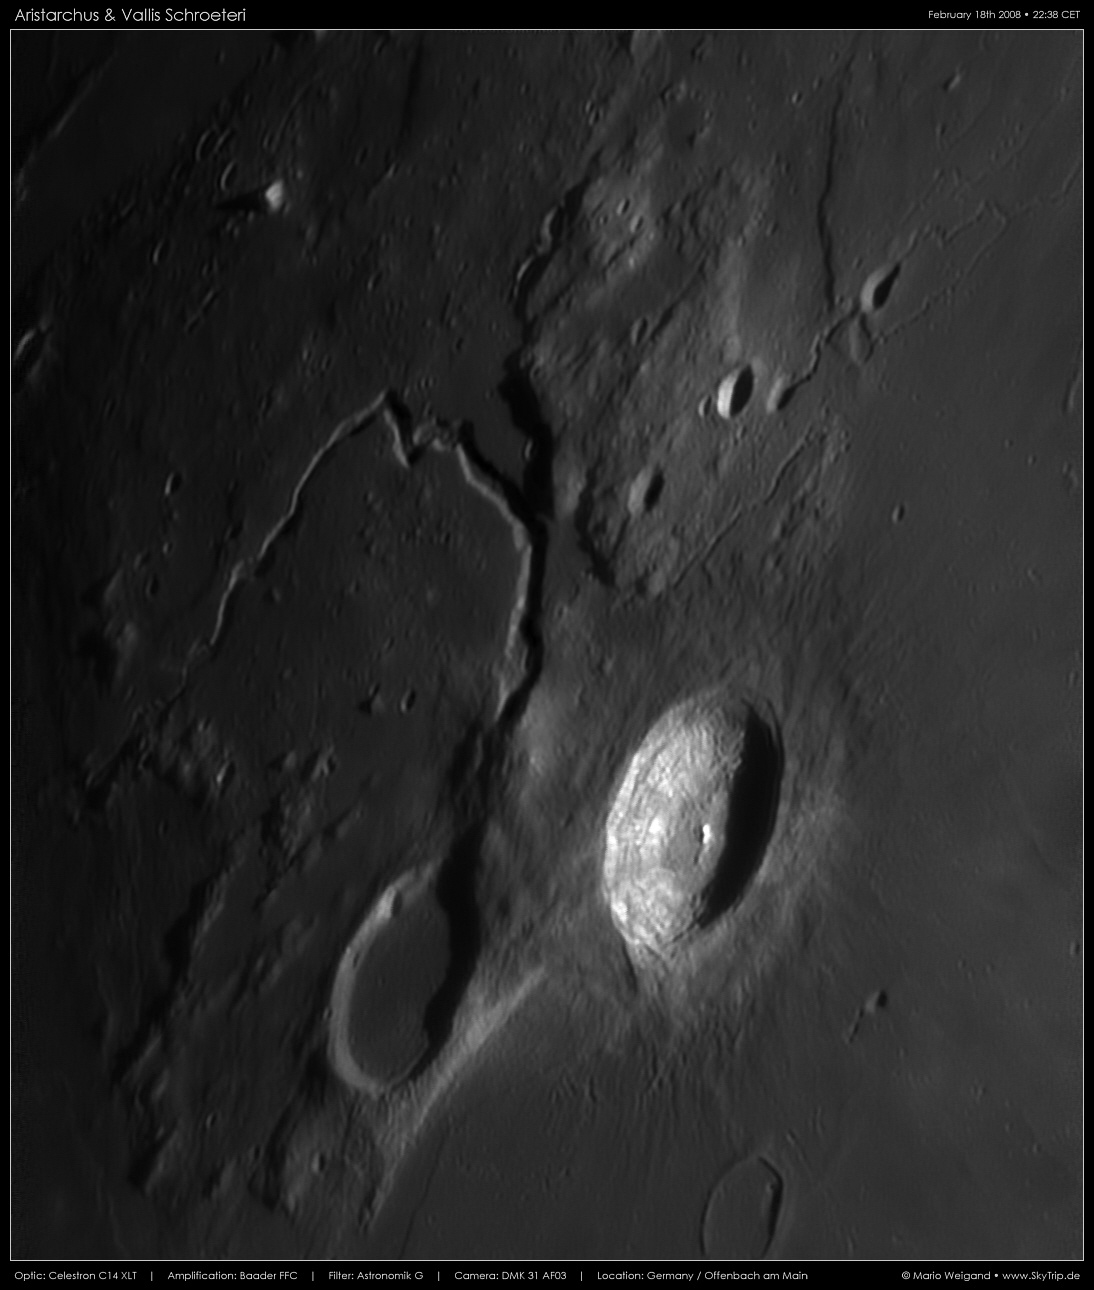 Mondfoto: Aristarchus & Vallis Schroeteri